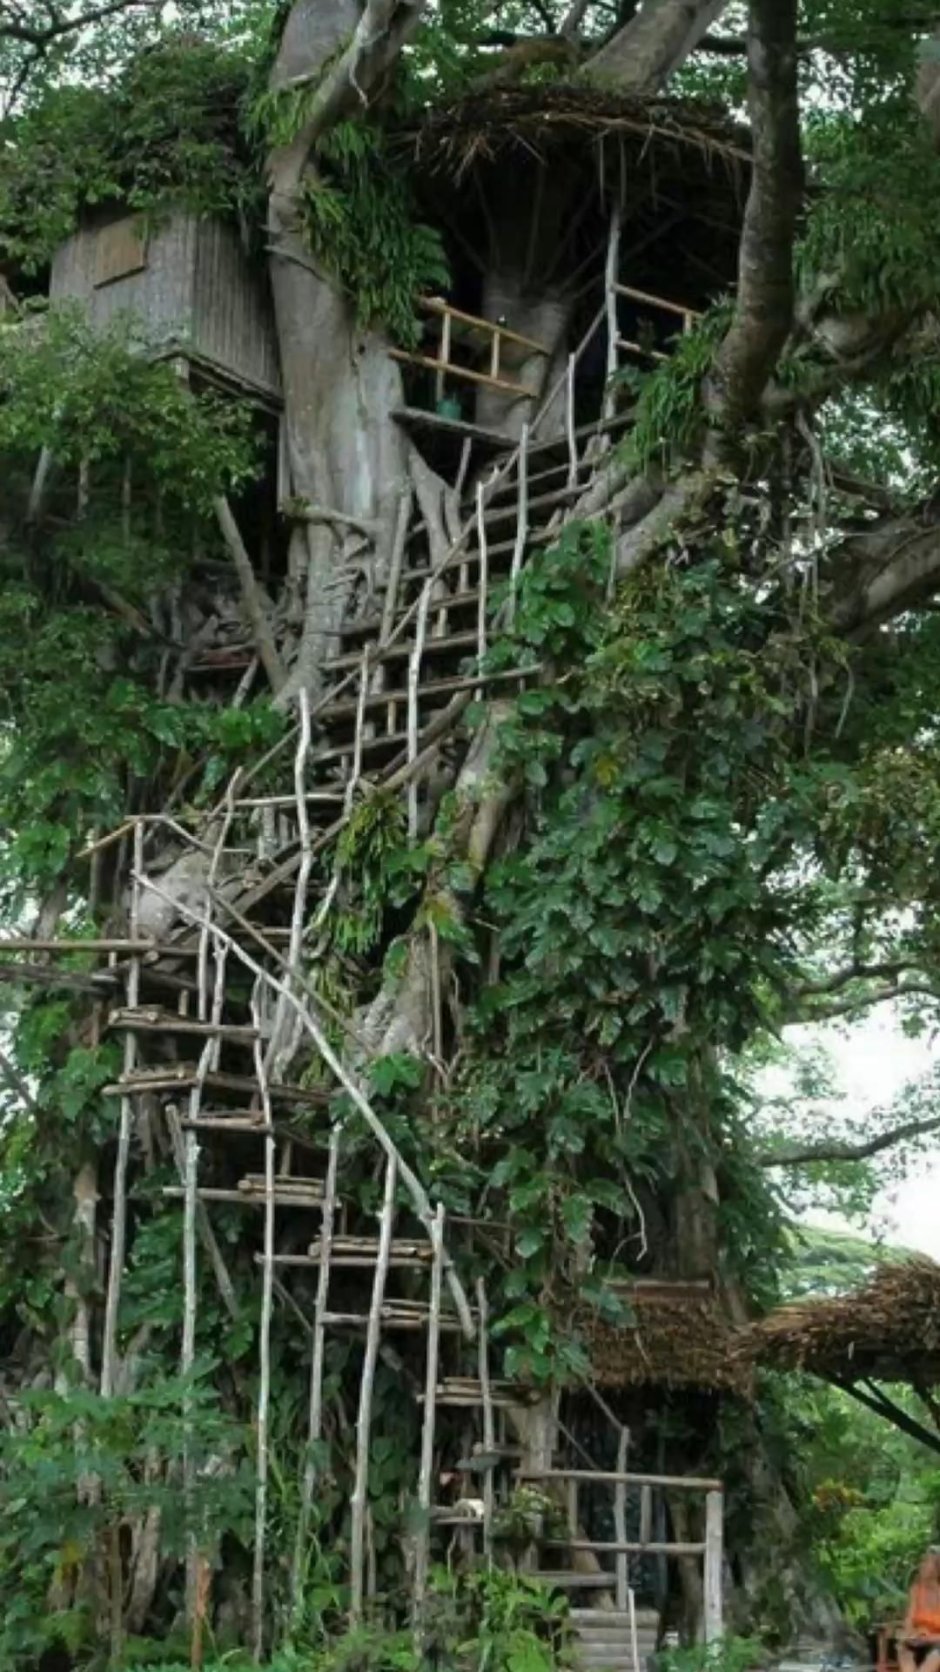 Дом на дереве в джунглях